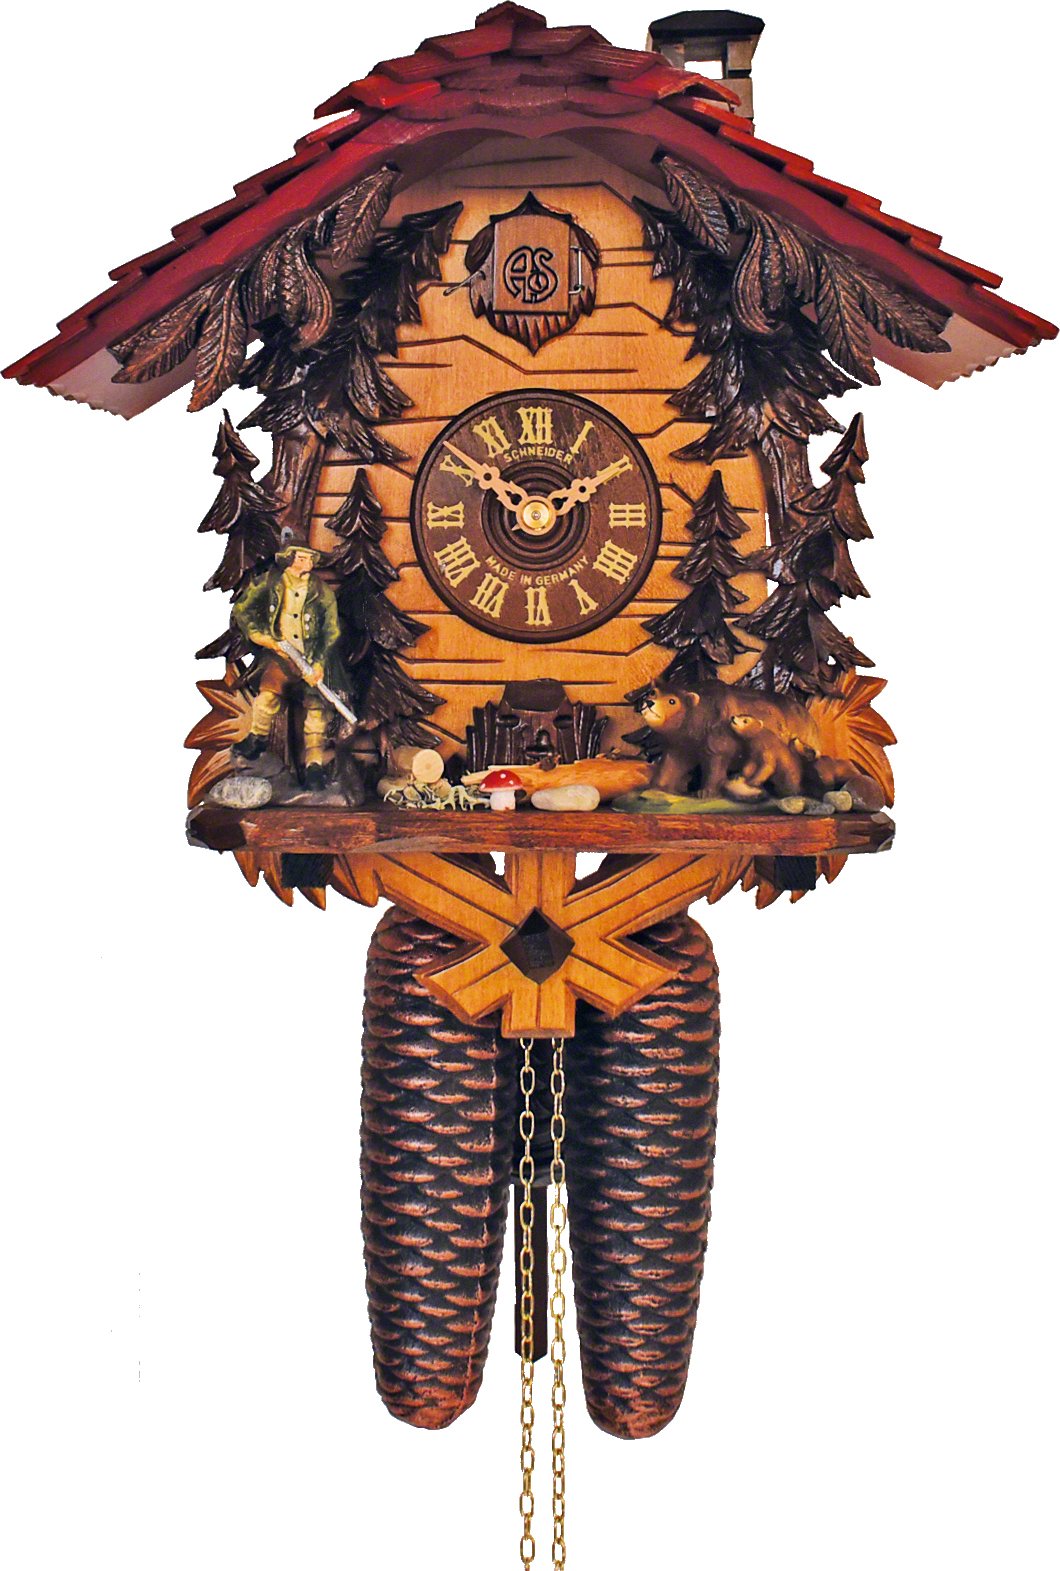 Cuckoo Clock 8-day-movement Chalet-Style 29cm by Anton Schneider